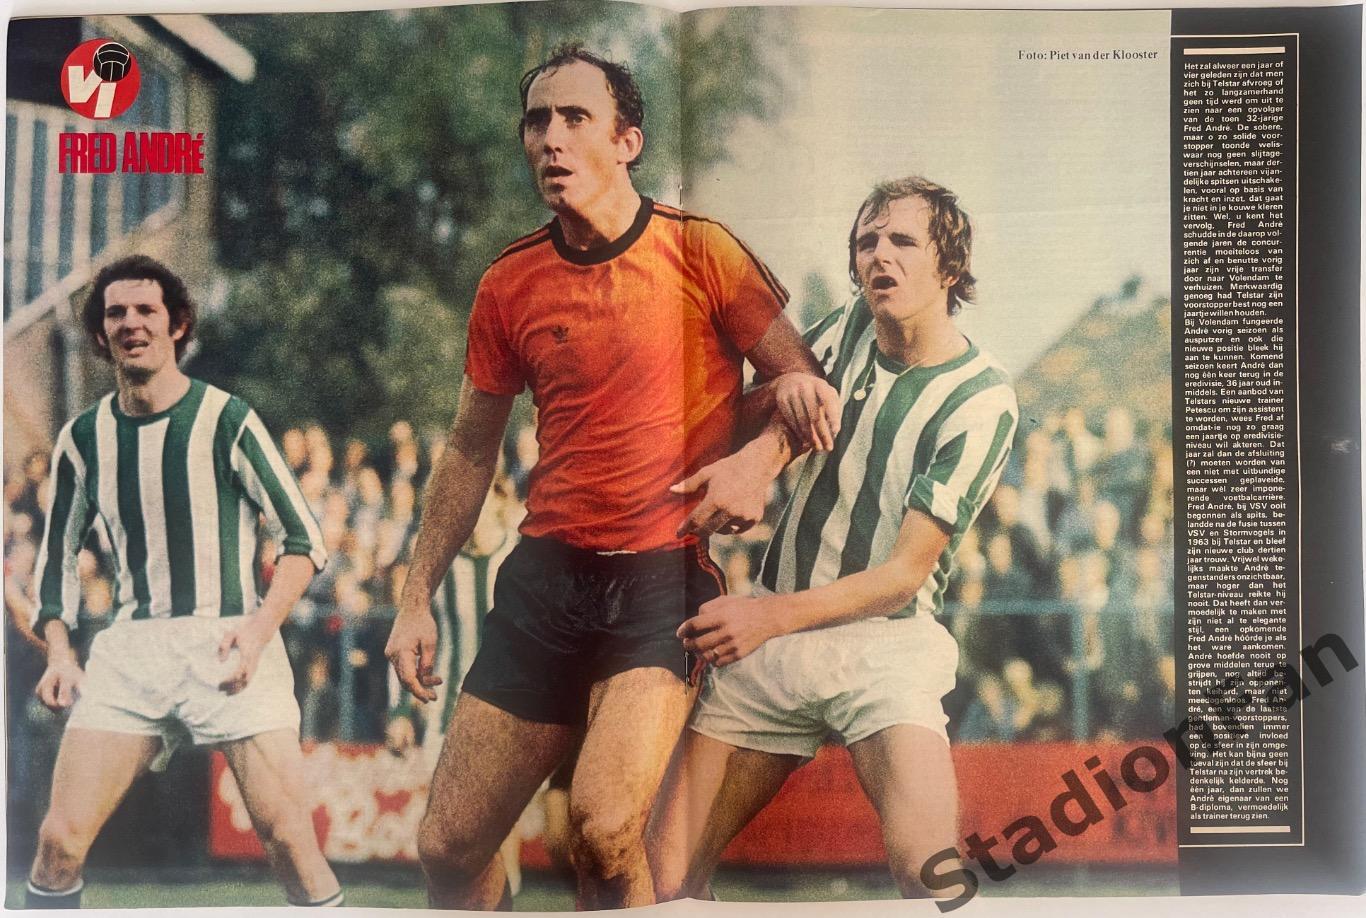 Журнал Voetbal nr.30 - 1977 год. 2